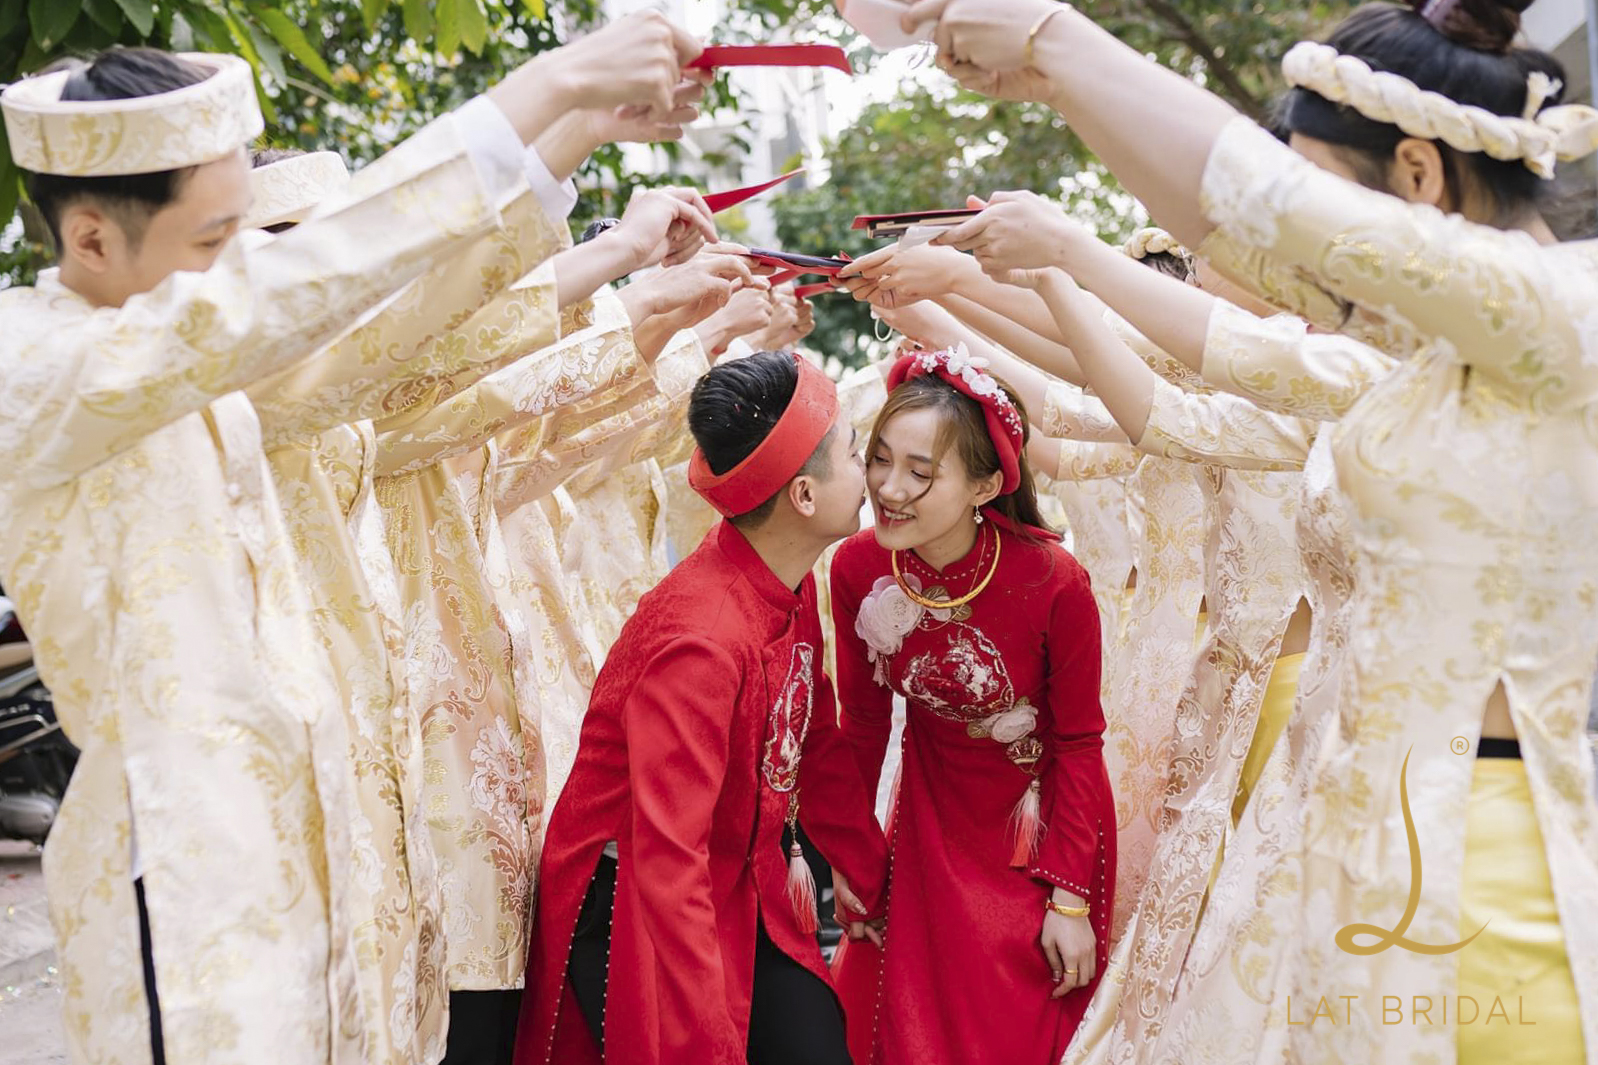 Feedback áo dài Hoa Vân và áo dài bê tráp Hoàng Gia dành cho LAT BRIDAL